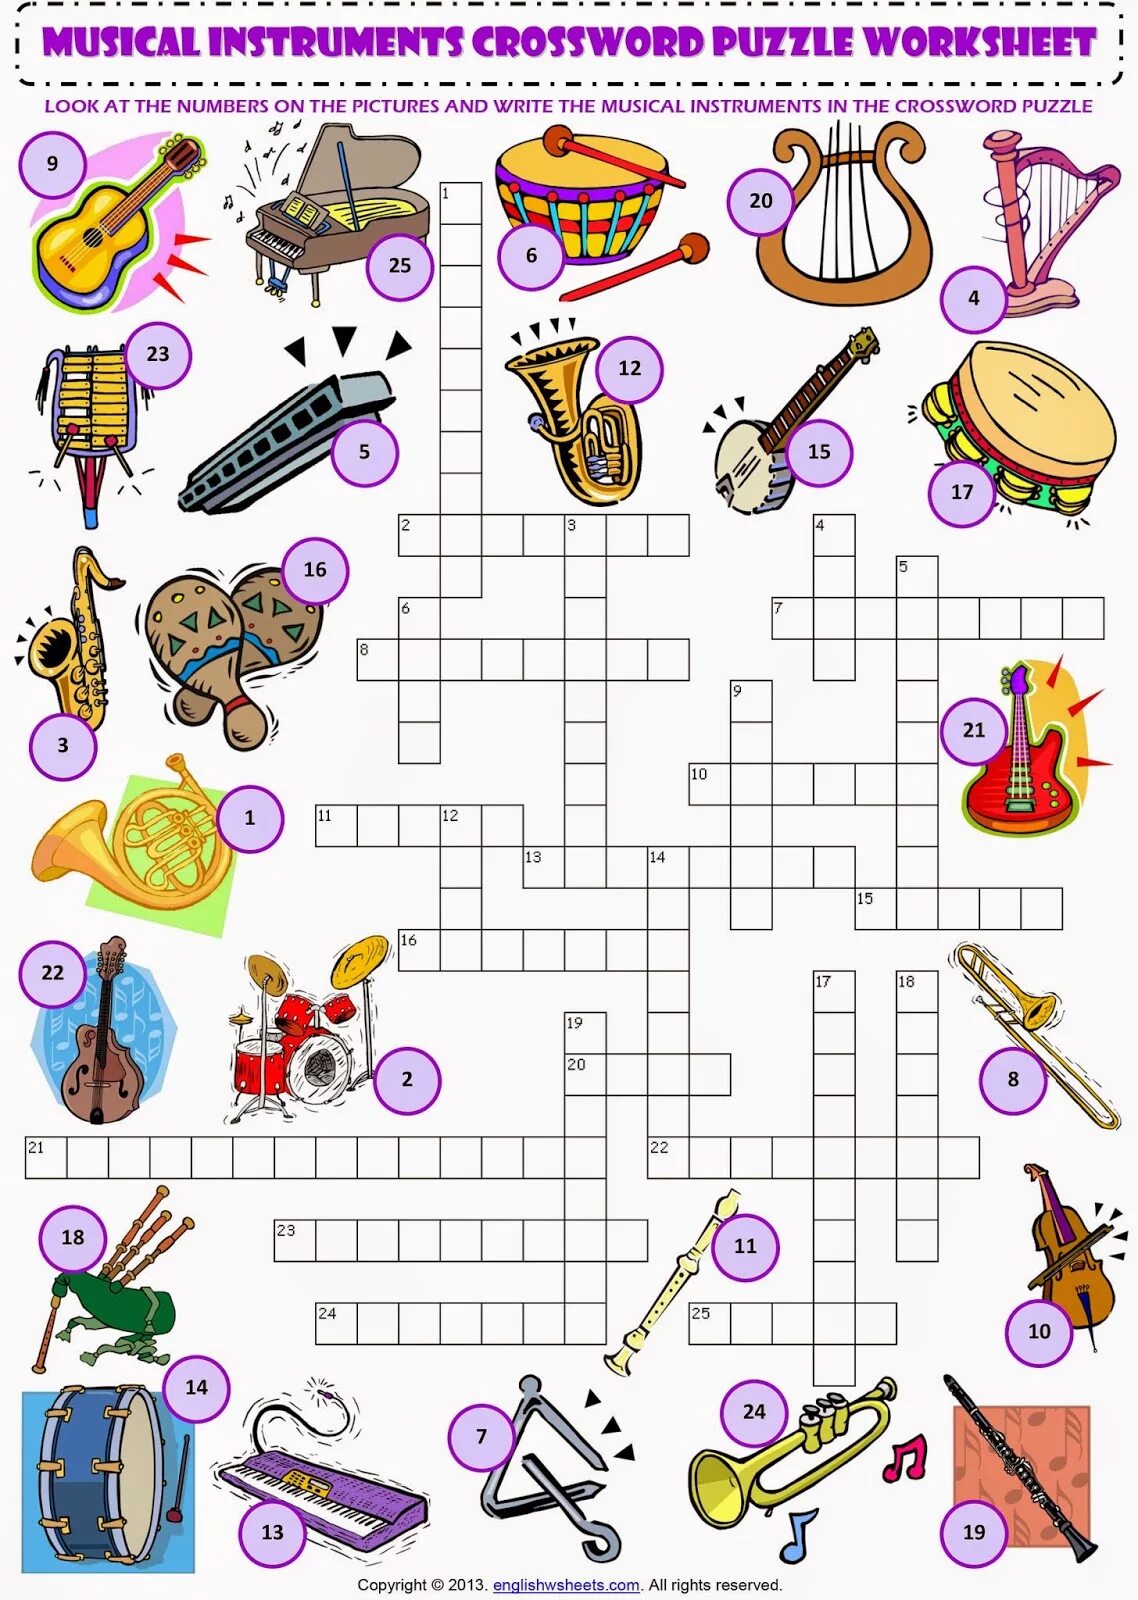 Музыкальные кроссворды для детей. Кроссворд музыкальные инструменты. Кроссворд музыкальные инструменты для детей. Музыкальный кроссворд для дошкольников.